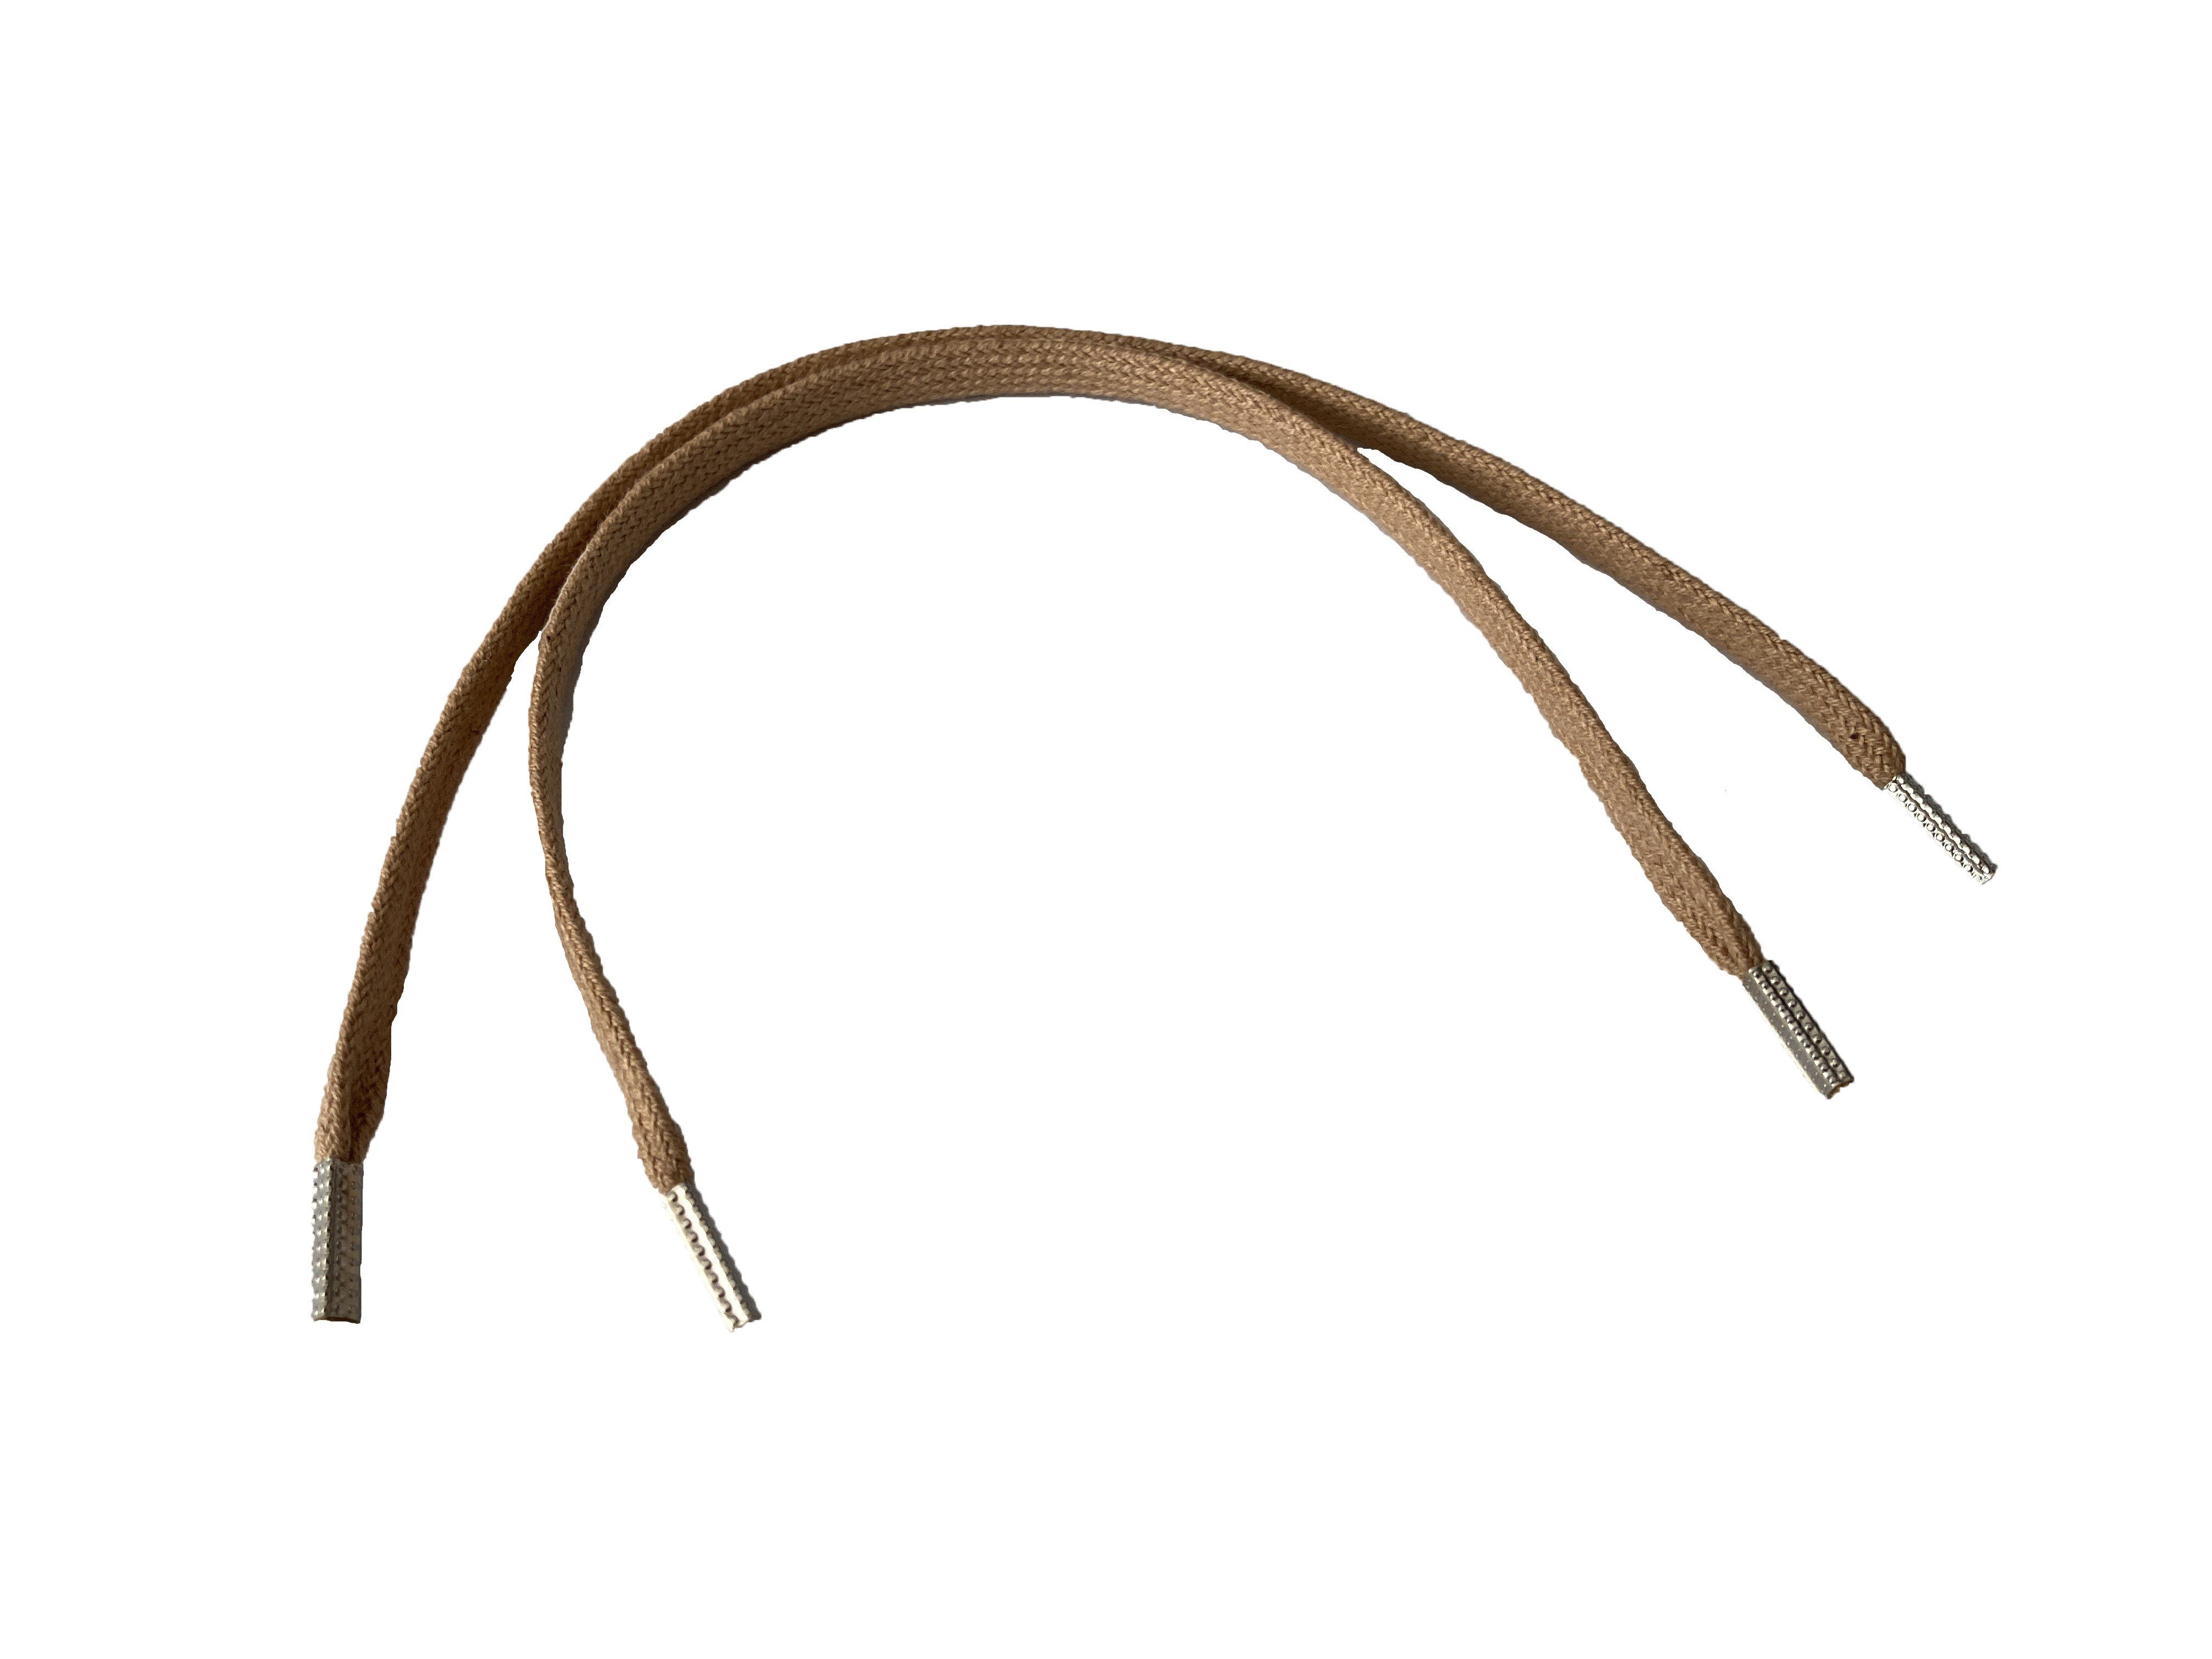 Rema Schnürsenkel Rema Schnürsenkel Camel - flach - ca. 5 mm schmal für Sie nach Wunschlänge geschnitten und mit Metallenden versehen | Schnürsenkel